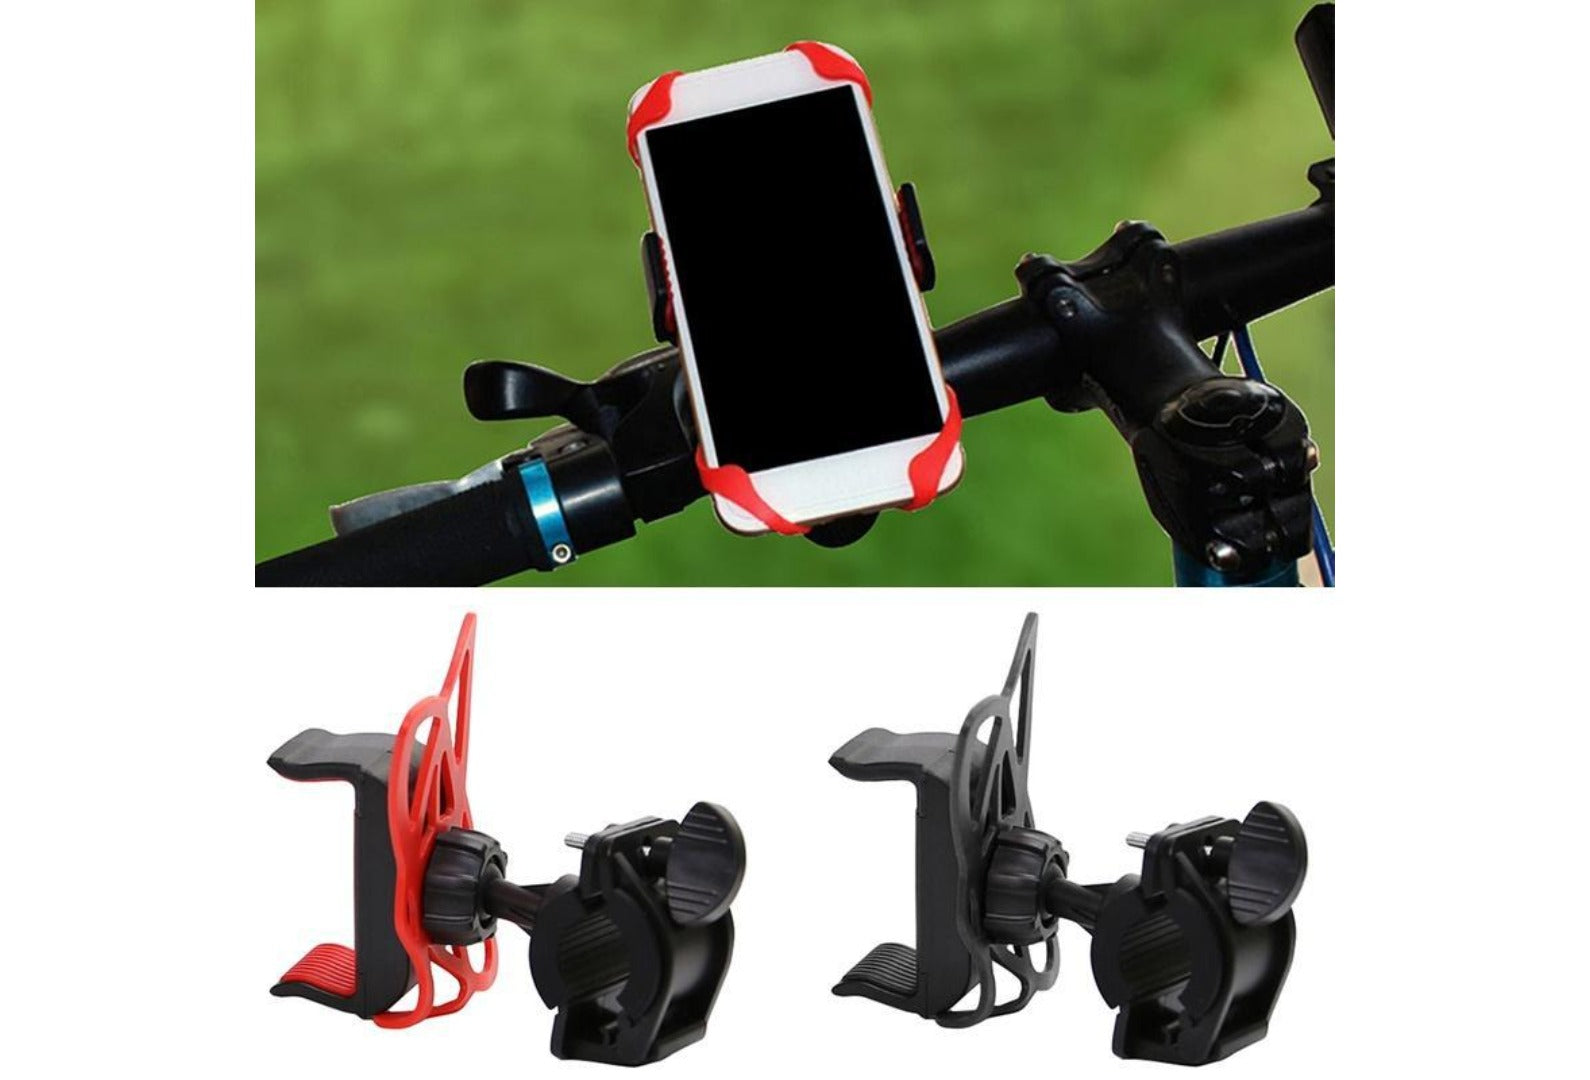 FREE - Bicycle Steering Mount Bicycle Computer Mount Pop Socket Bike Phone Holder.